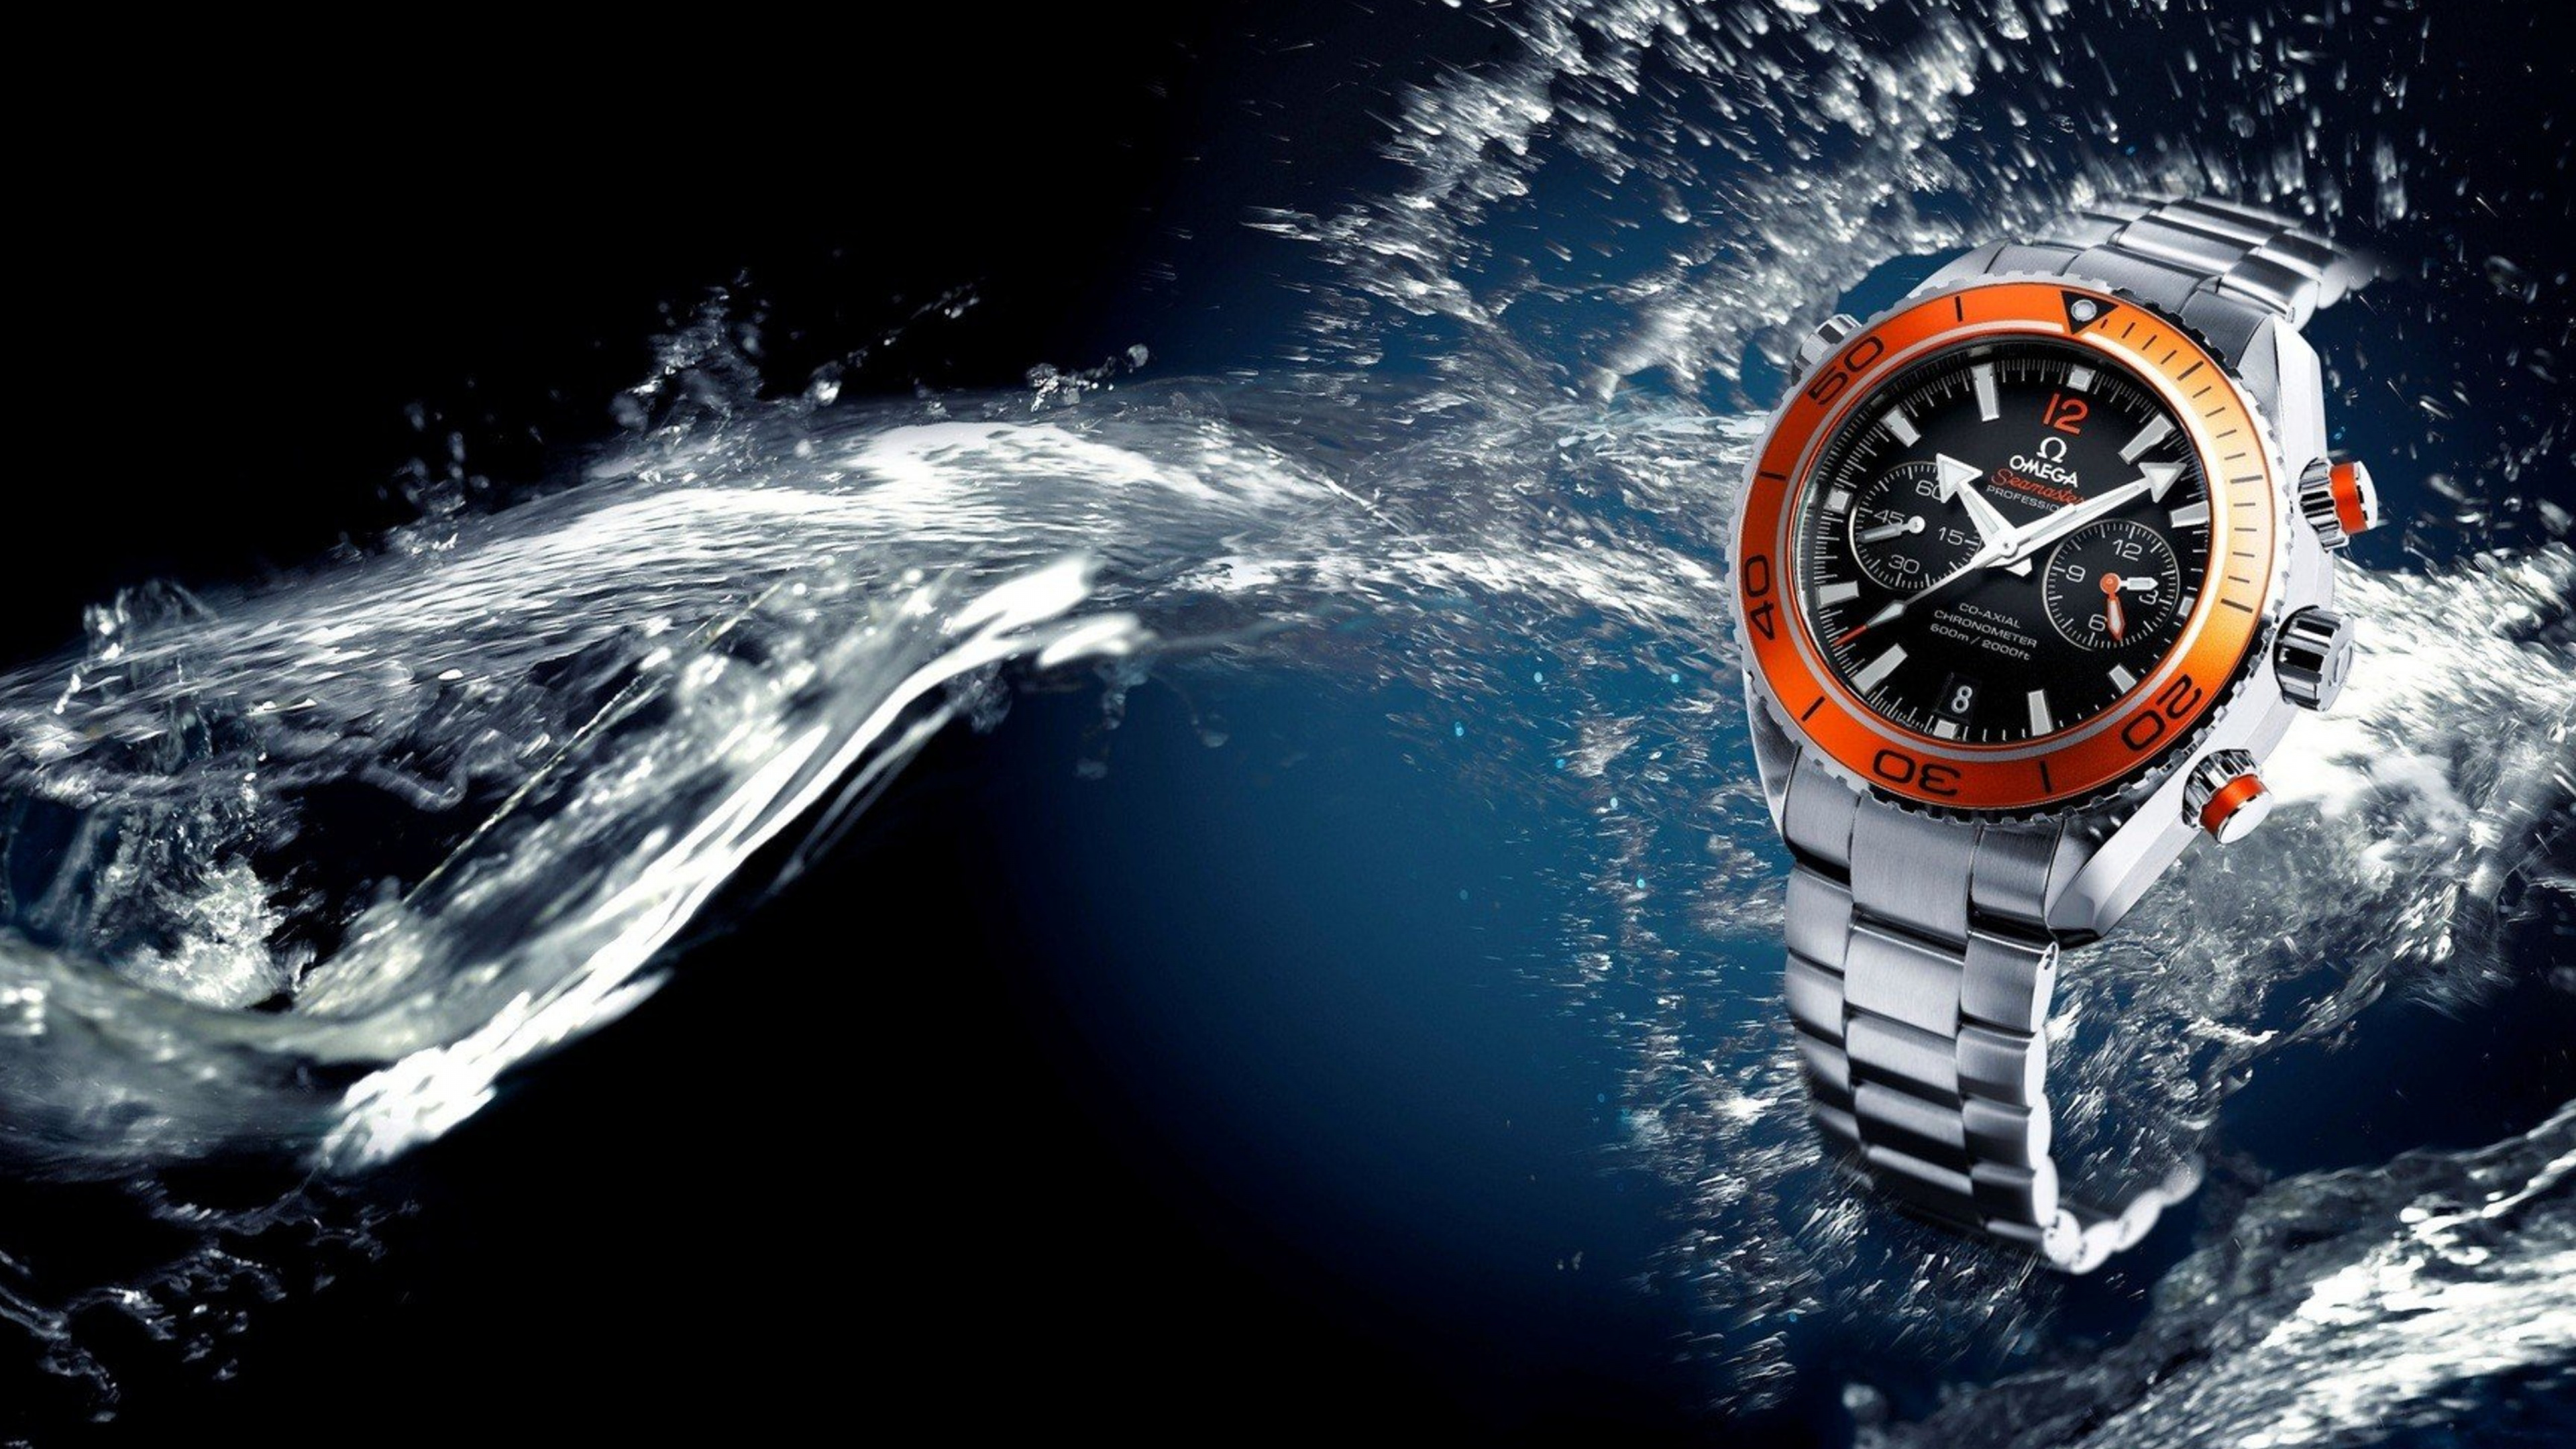 World 3 watch. Обои часы Омега симастер. Швейцарские часы вода. Обои на часы. Картинки на рабочий стол часы.